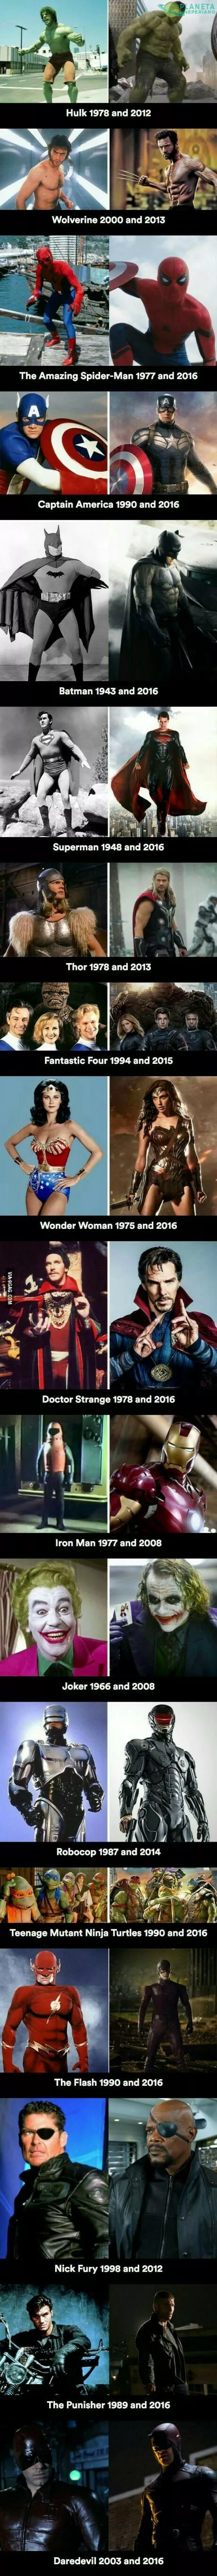 historia de los superhéroes....